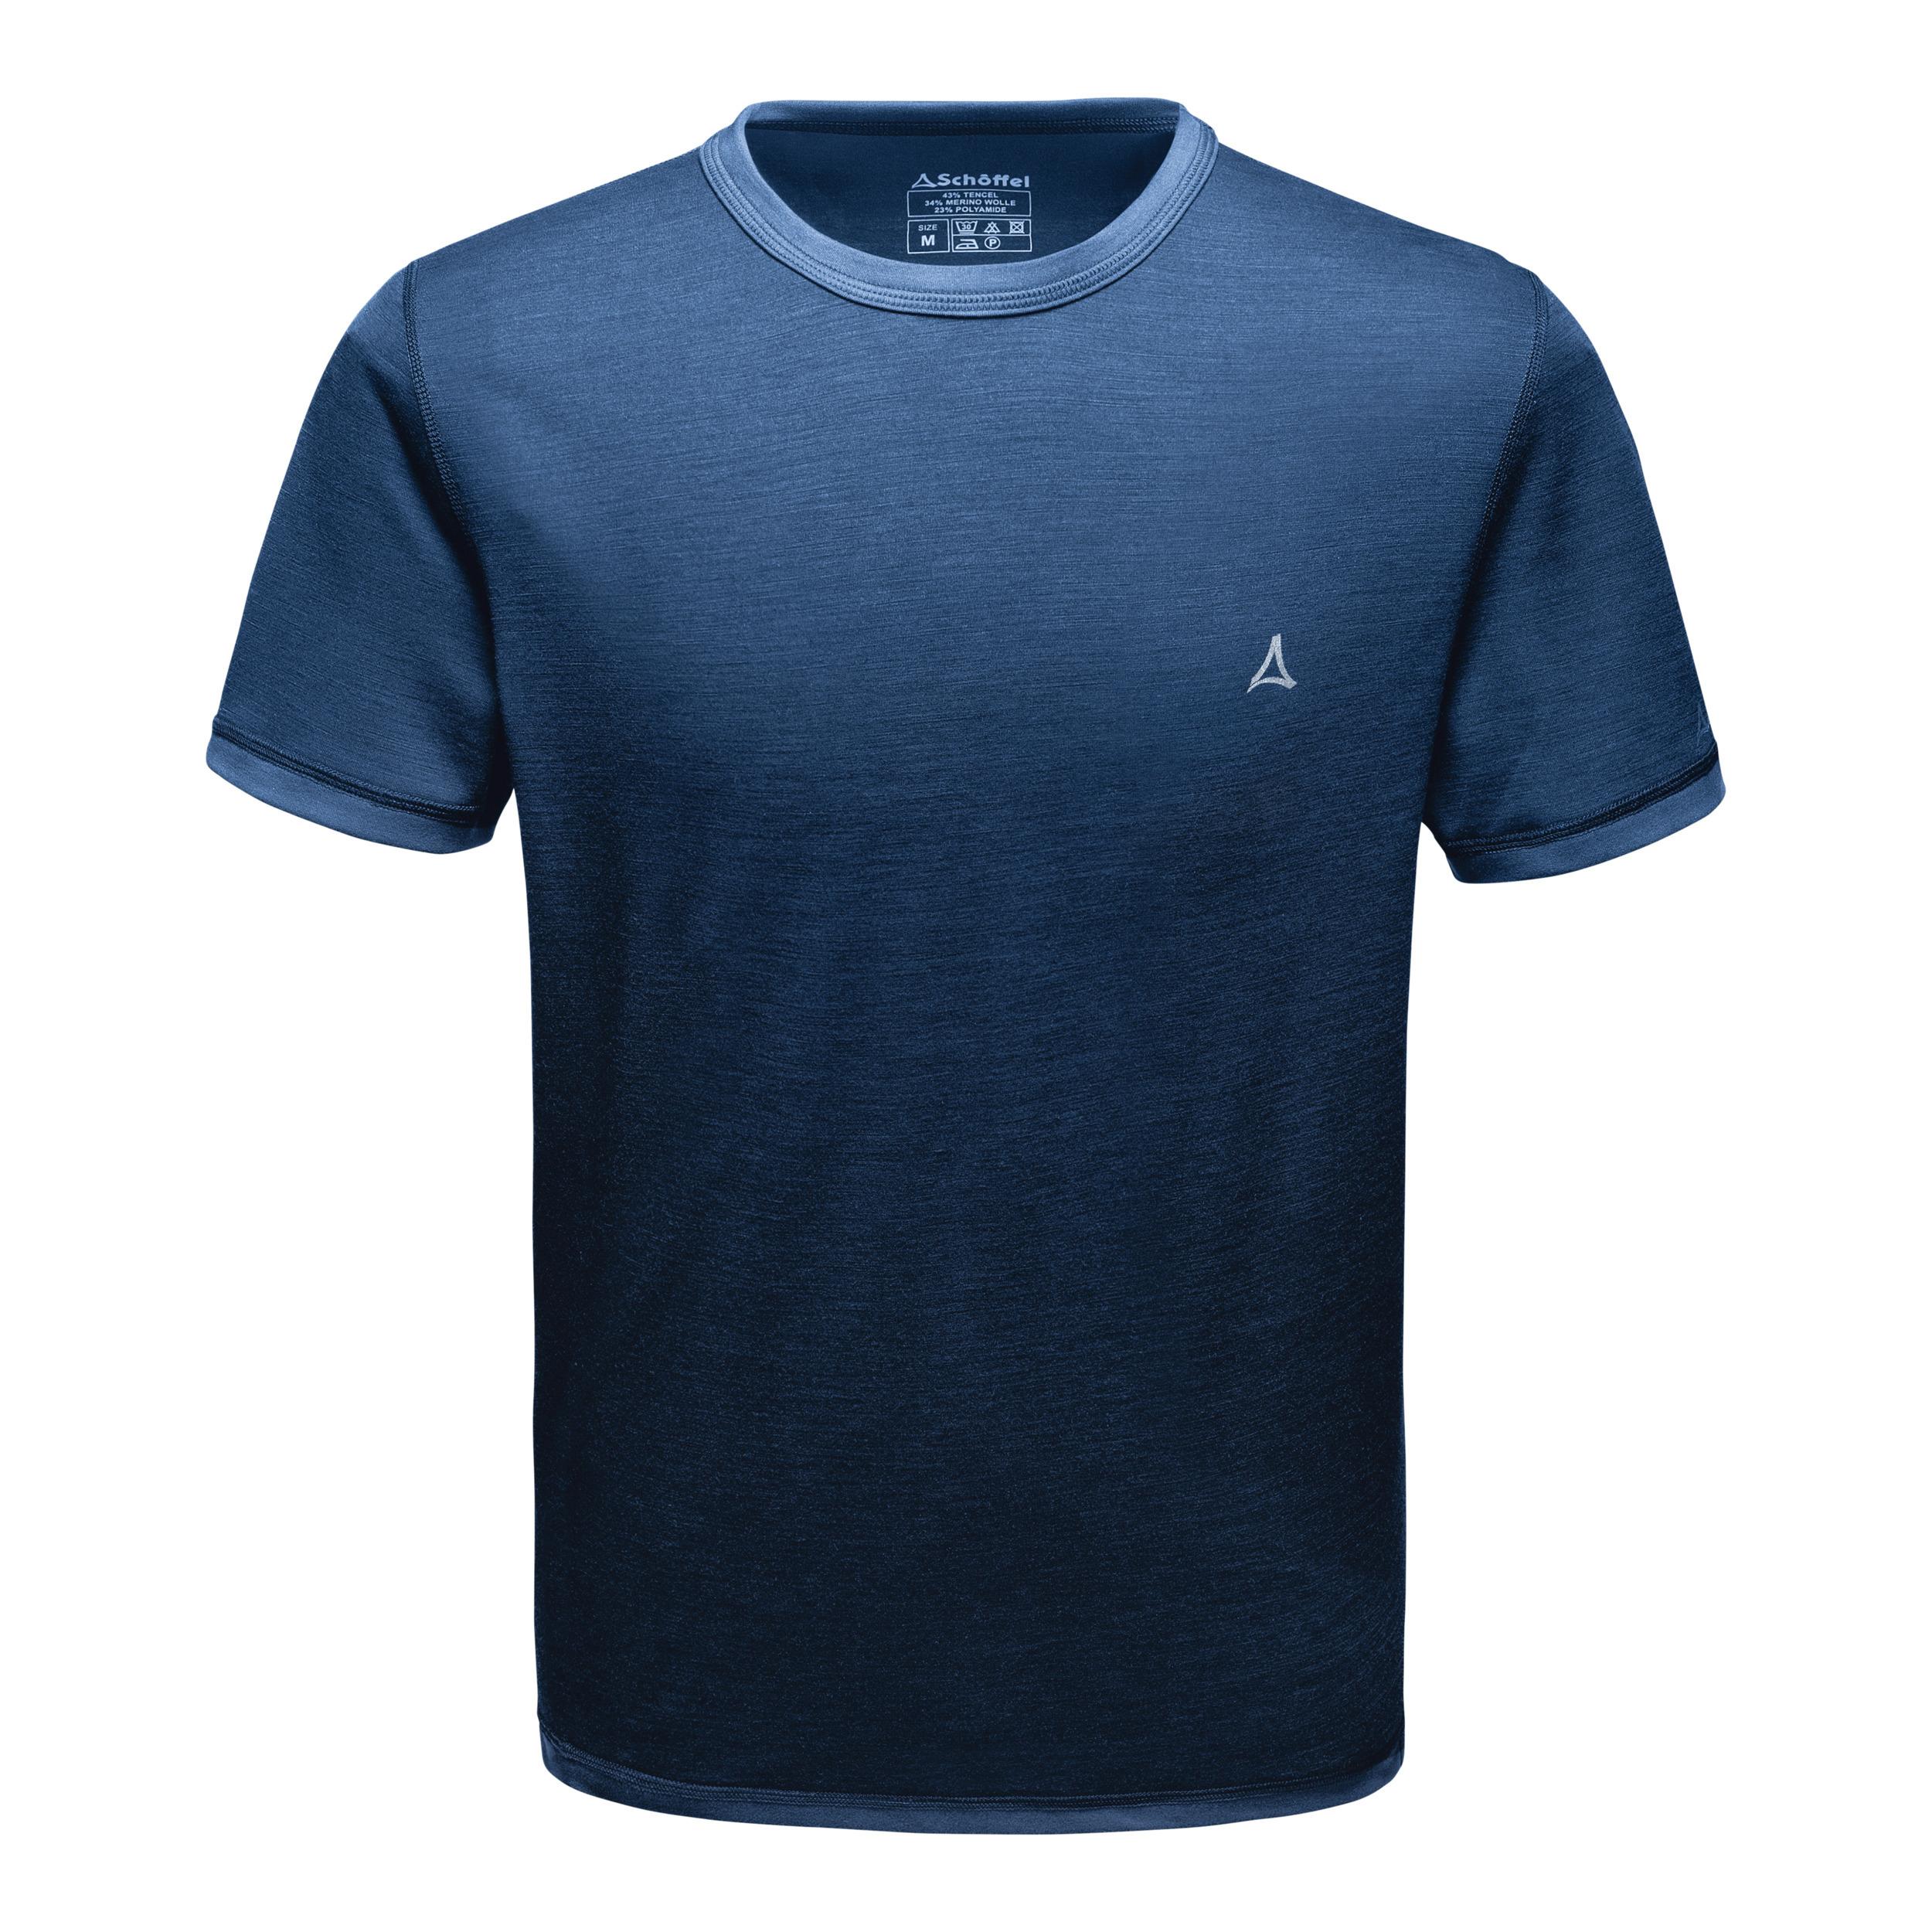 Schöffel Merino Sport Shirt 1/2 im von Online mazarine M Shop Herren Arm kaufen Funktionsshirt blue SportScheck